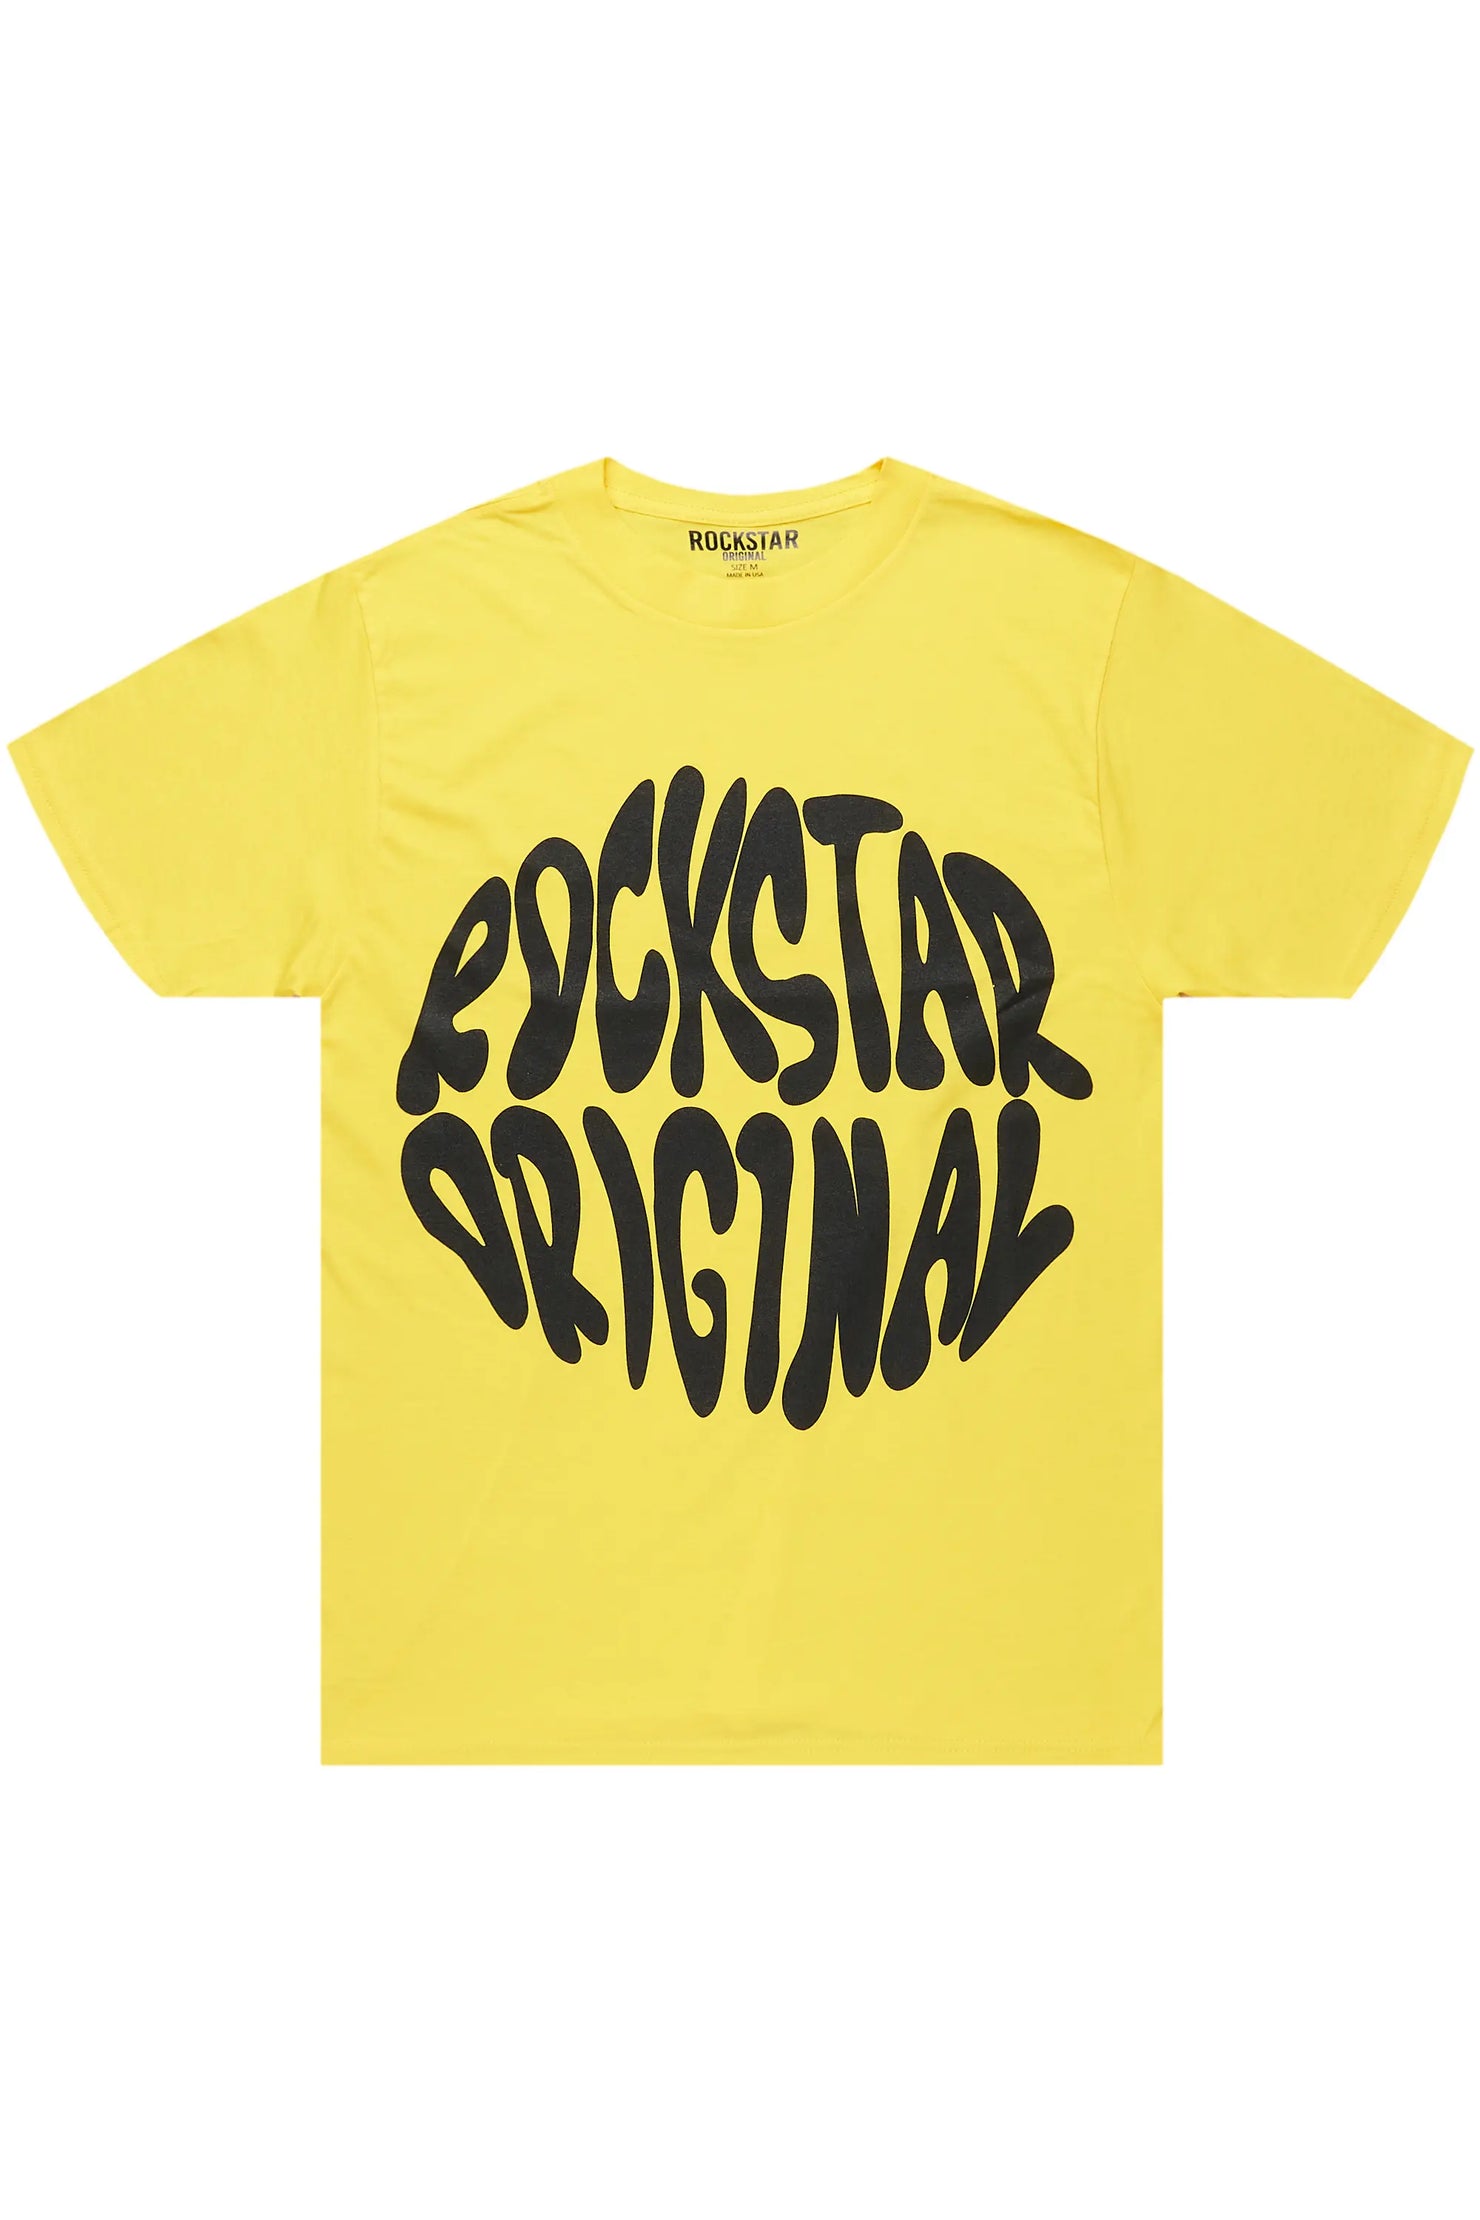 Maynor Yellow Oversized T-Shirt